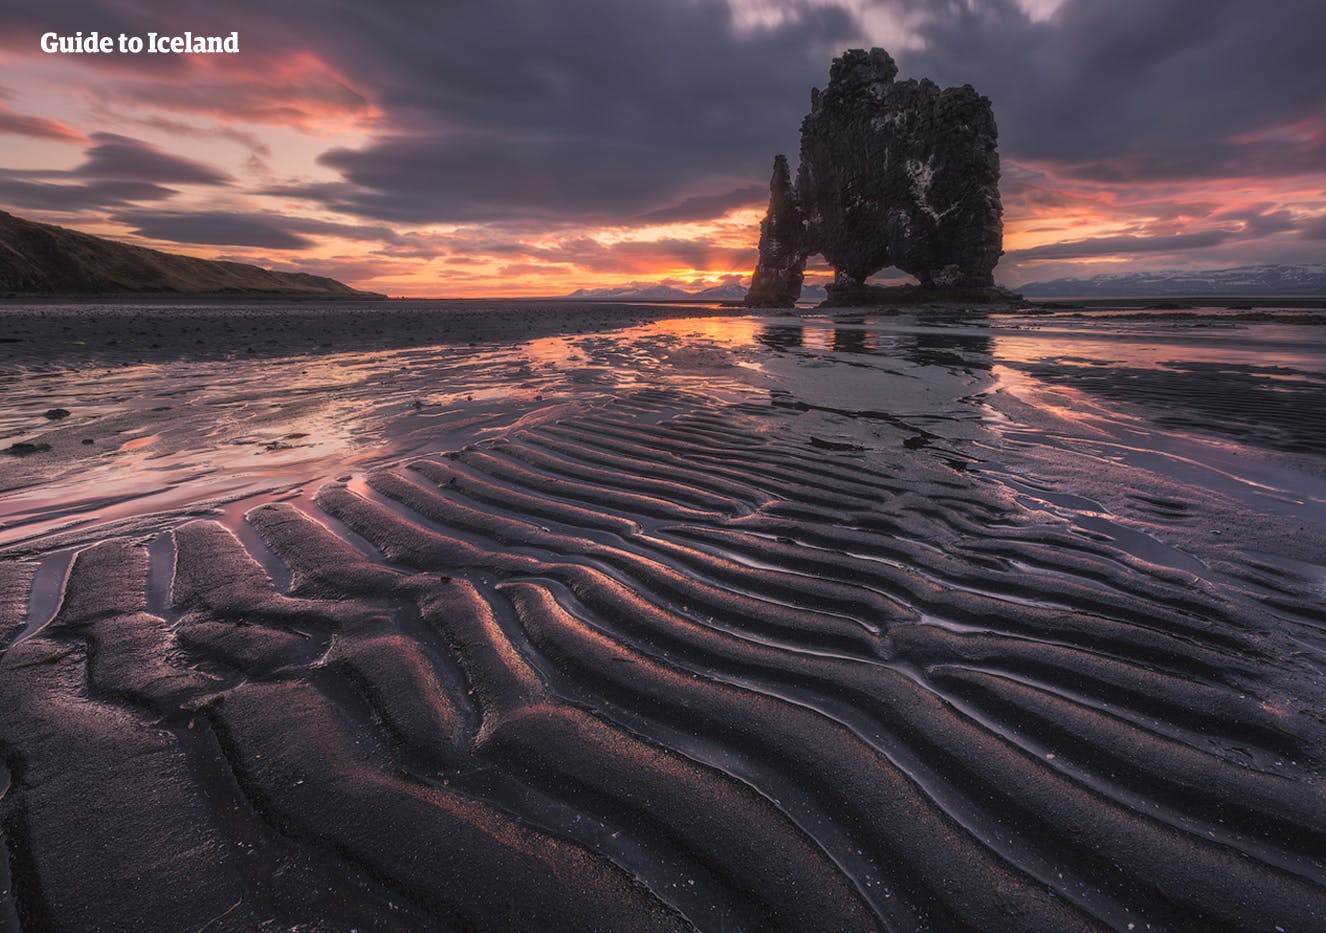 En la península de Vatnsnes, al norte de Islandia, se encuentra el impresionante monolito de Hvítserkur.